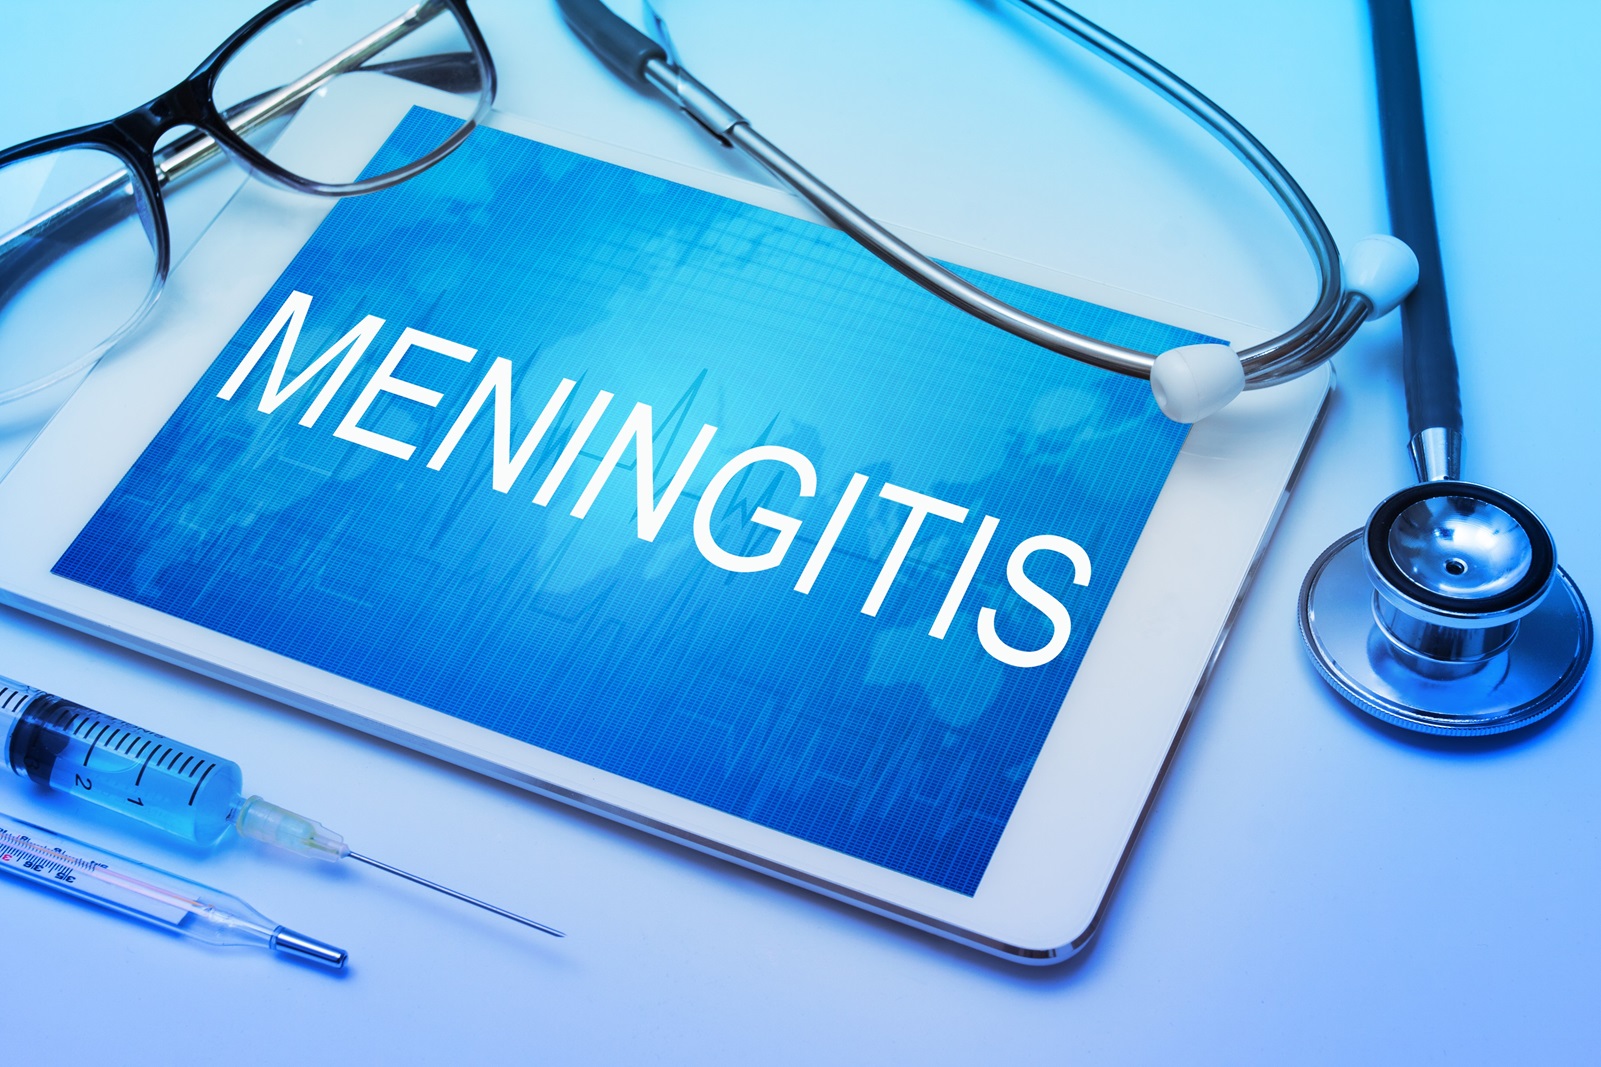 Billede af tablet med meningitis